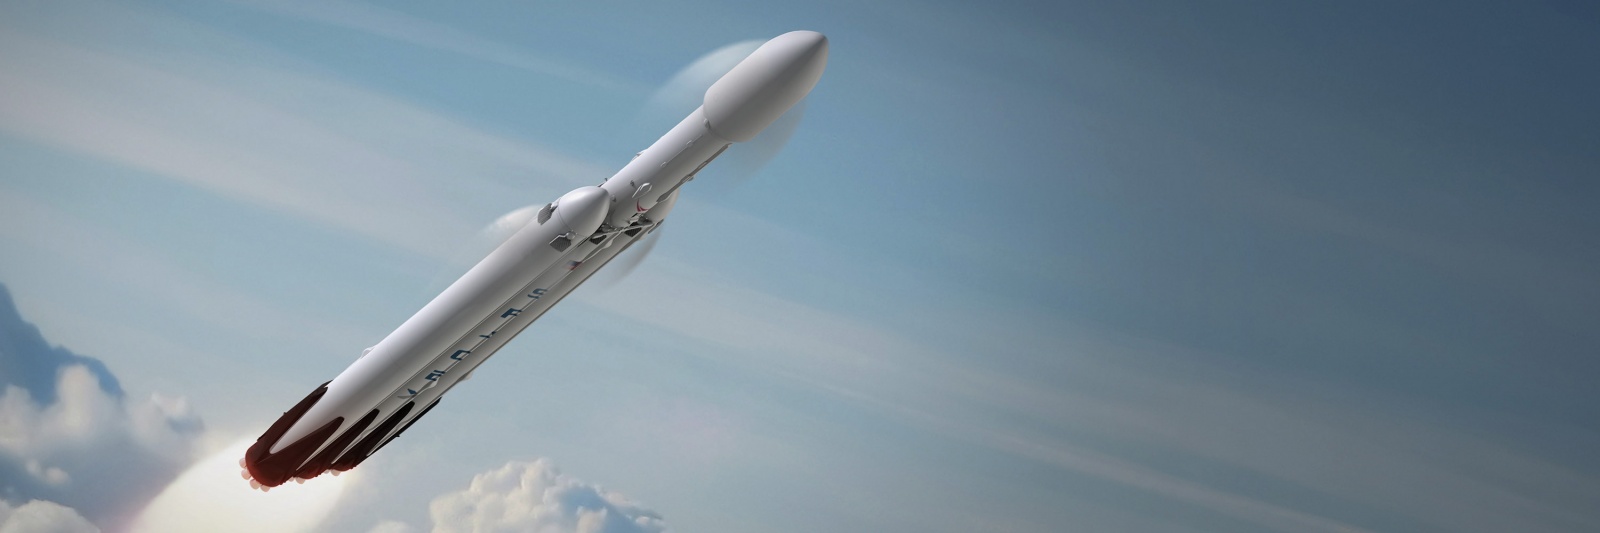 SpaceX рассказала, как и где планируется посадить отработанные ступени Falcon Heavy - 1